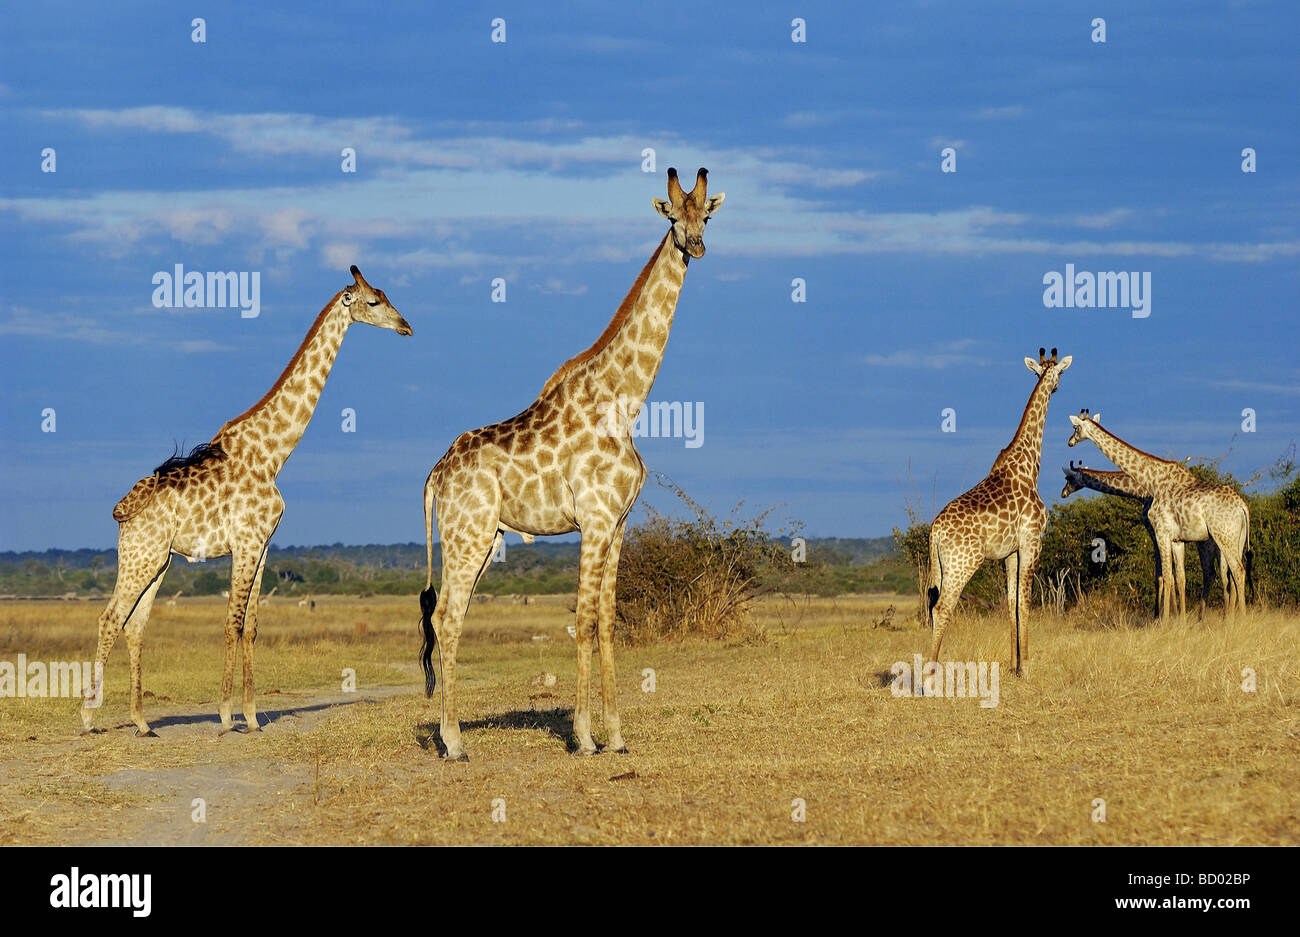 Giraffen - stehend - in Savanne / giraffes - standing - in savannah / Giraffa camelopardalis Stock Photo